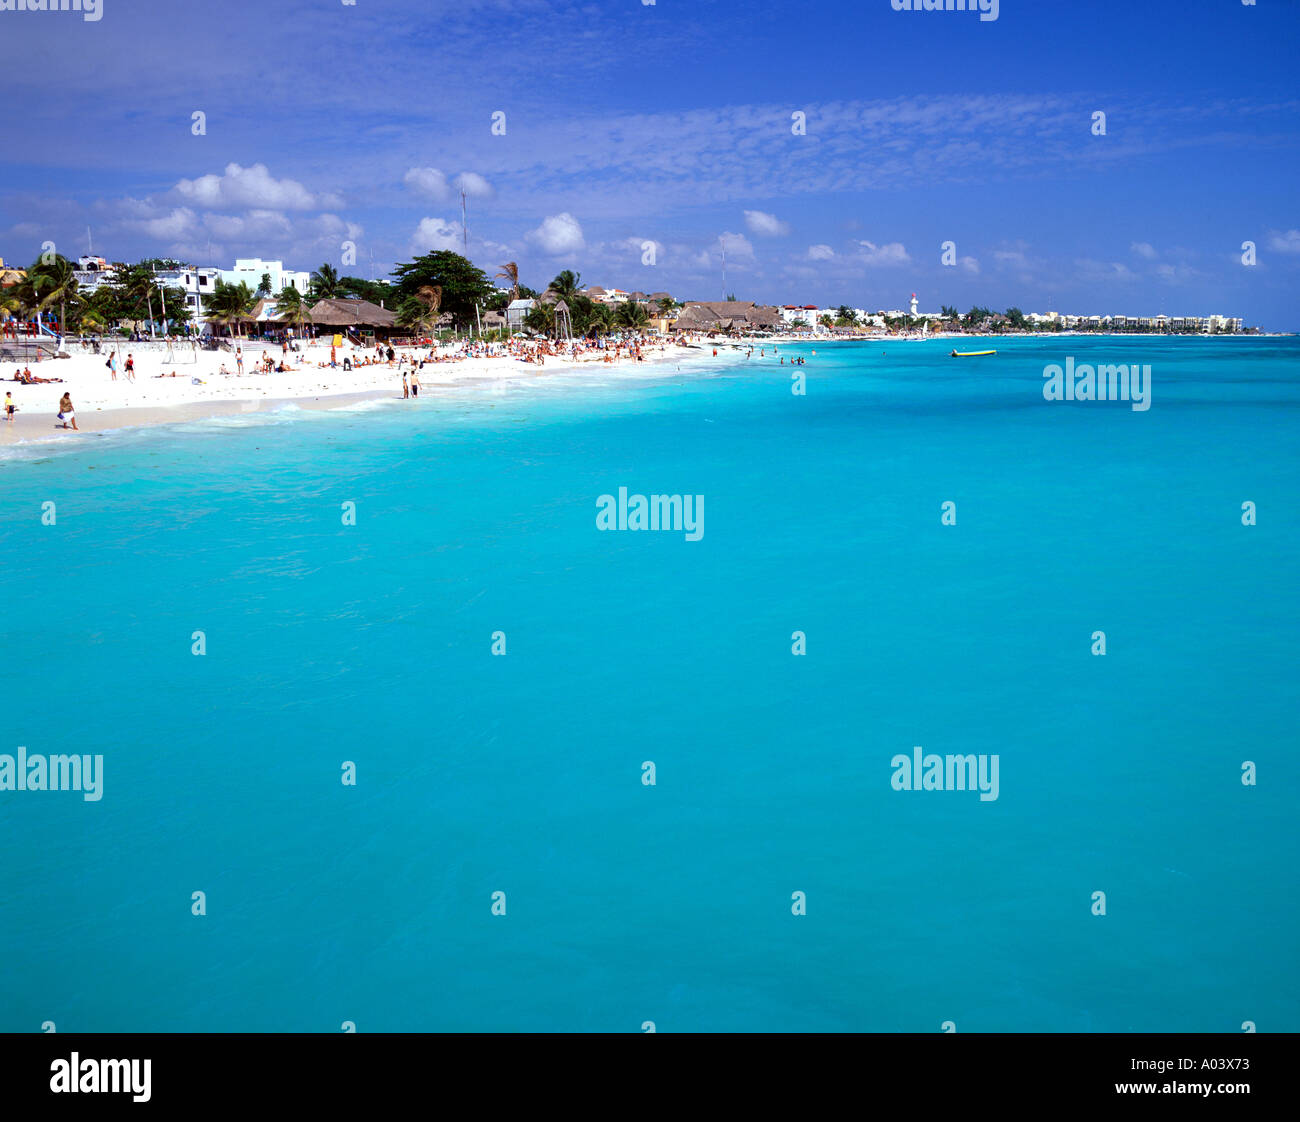 La spiaggia e il mare dei Caraibi a Playa del Carmen sulla penisola dello Yucatan in Messico. Foto Stock